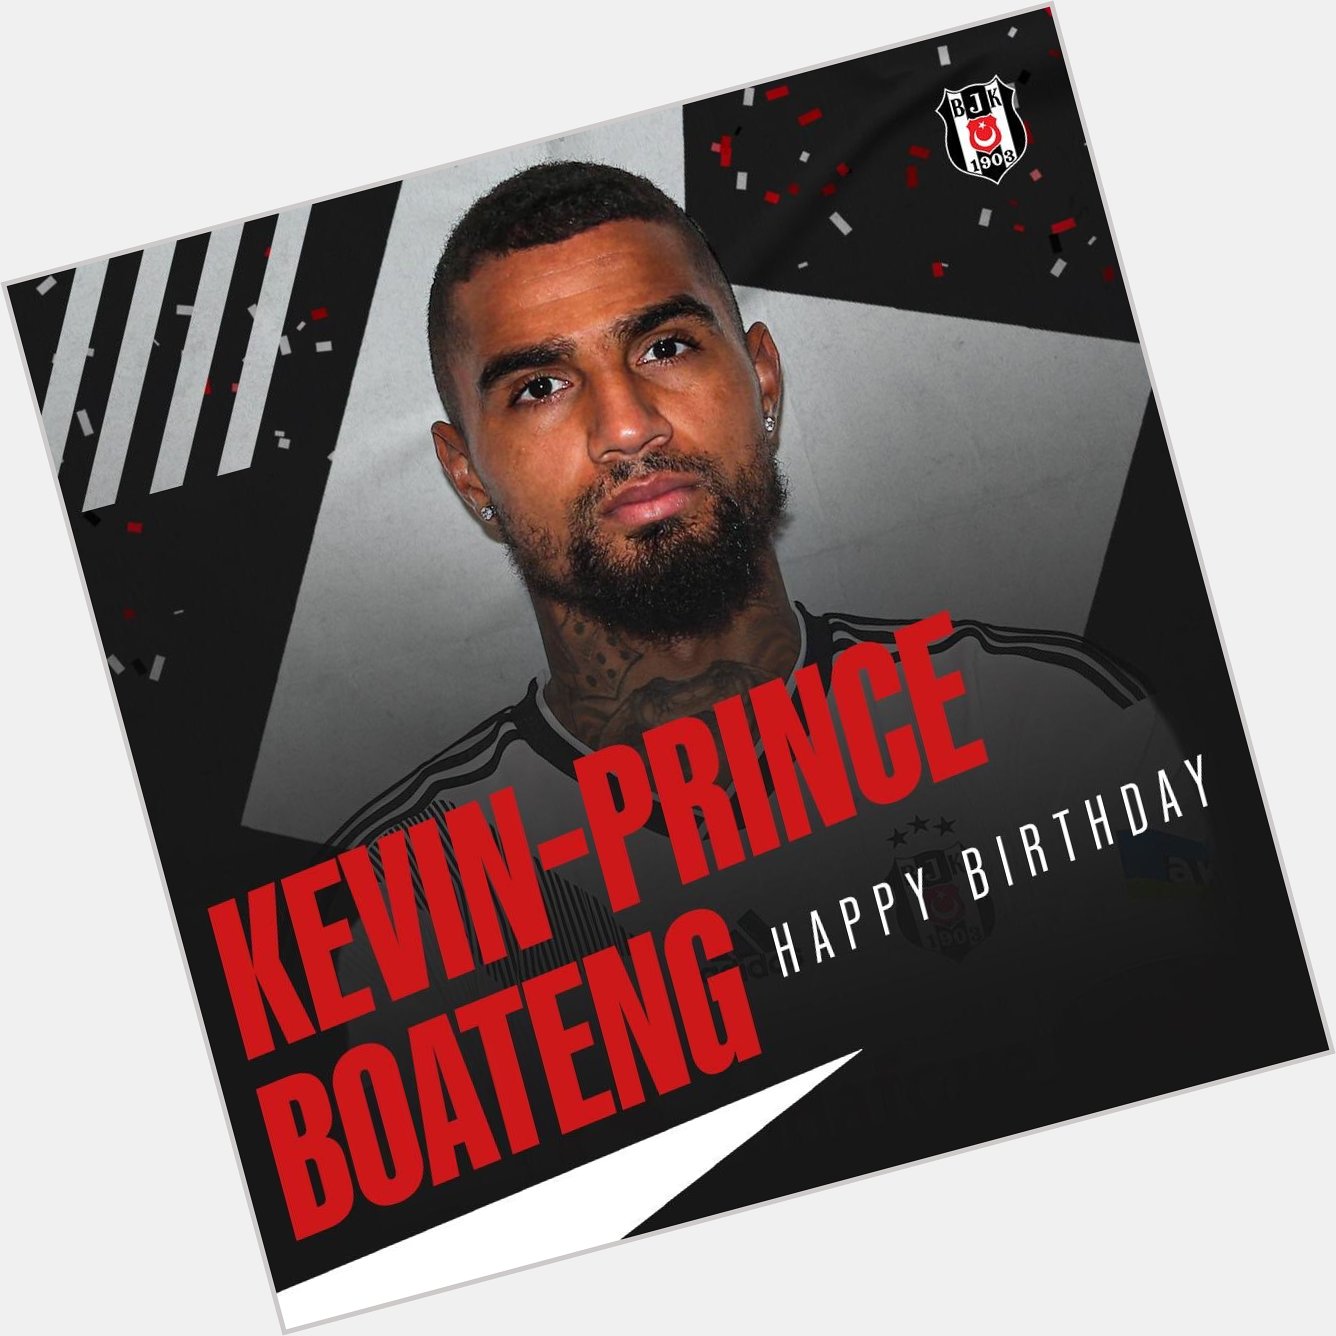 Happy Birthday Kevin-Prince Boateng, iyi ki do dun Bitanemmm, deli gibi severim...   